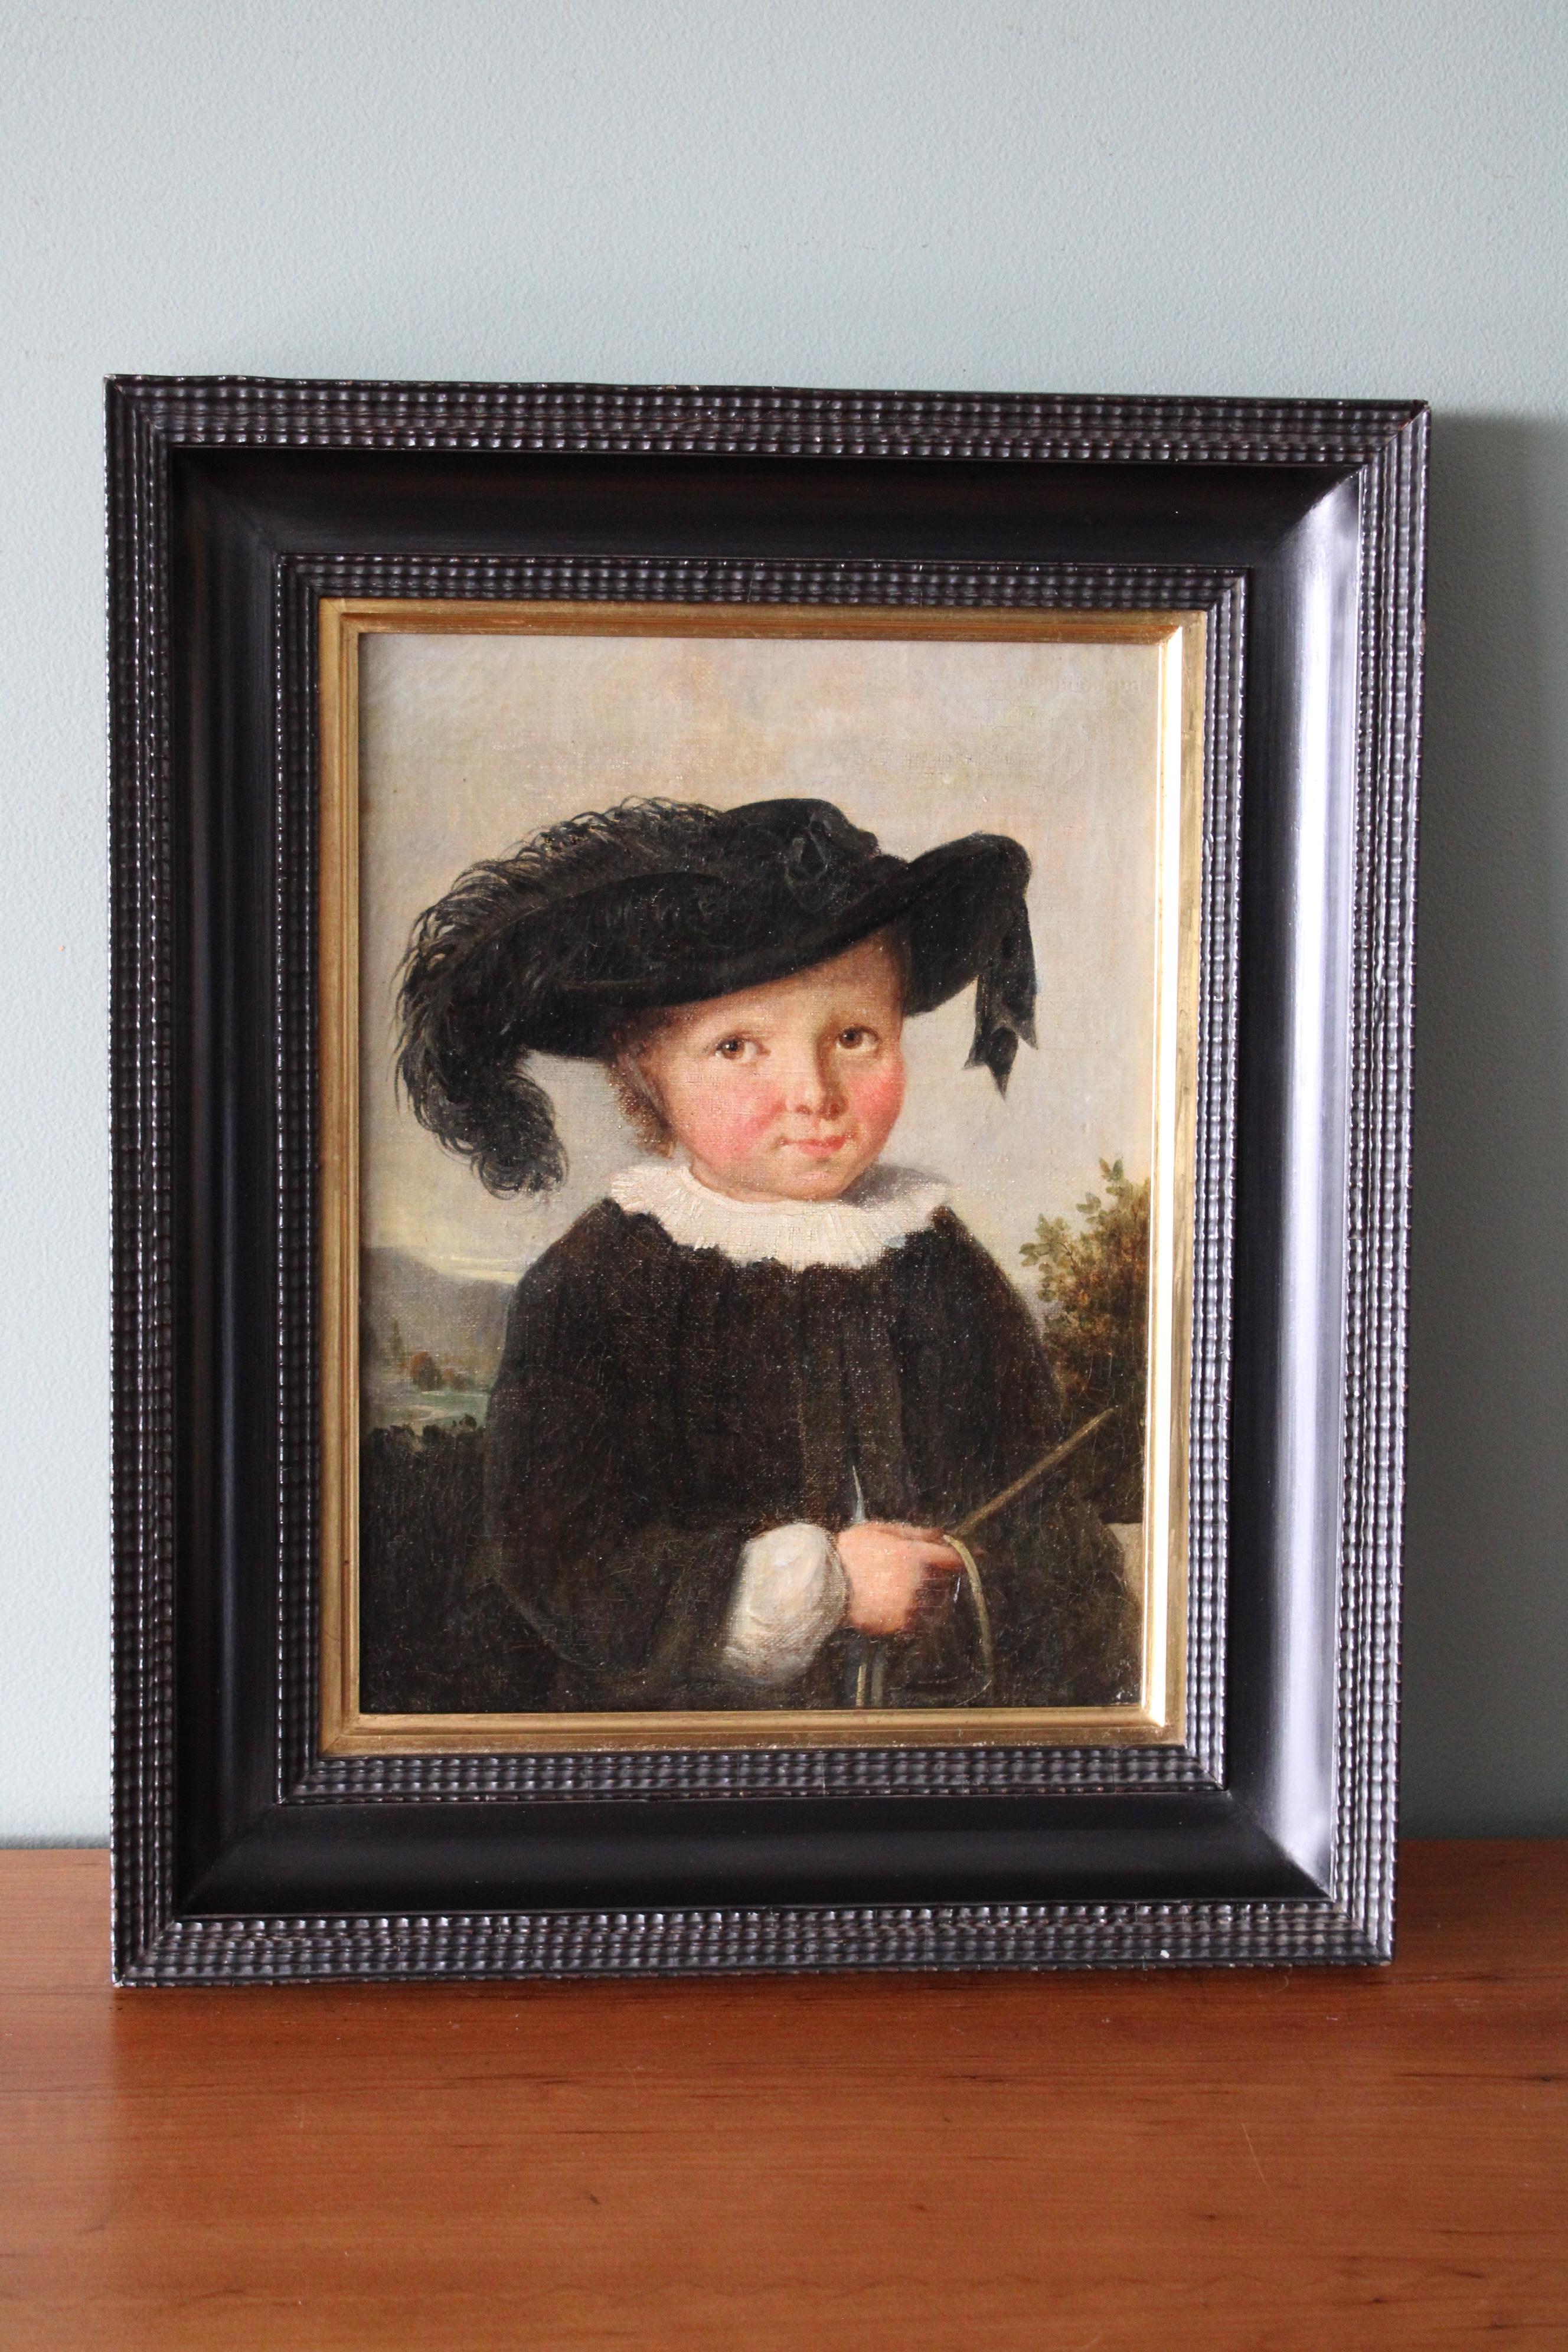 Portrait antique à l'huile du début des années 1800 d'un enfant coiffé d'un chapeau de plumes noires sur une toile tendue, encadré, non signé. Cette peinture à l'huile d'un enfant est vraiment exceptionnelle, elle me rappelle le tableau de Camille